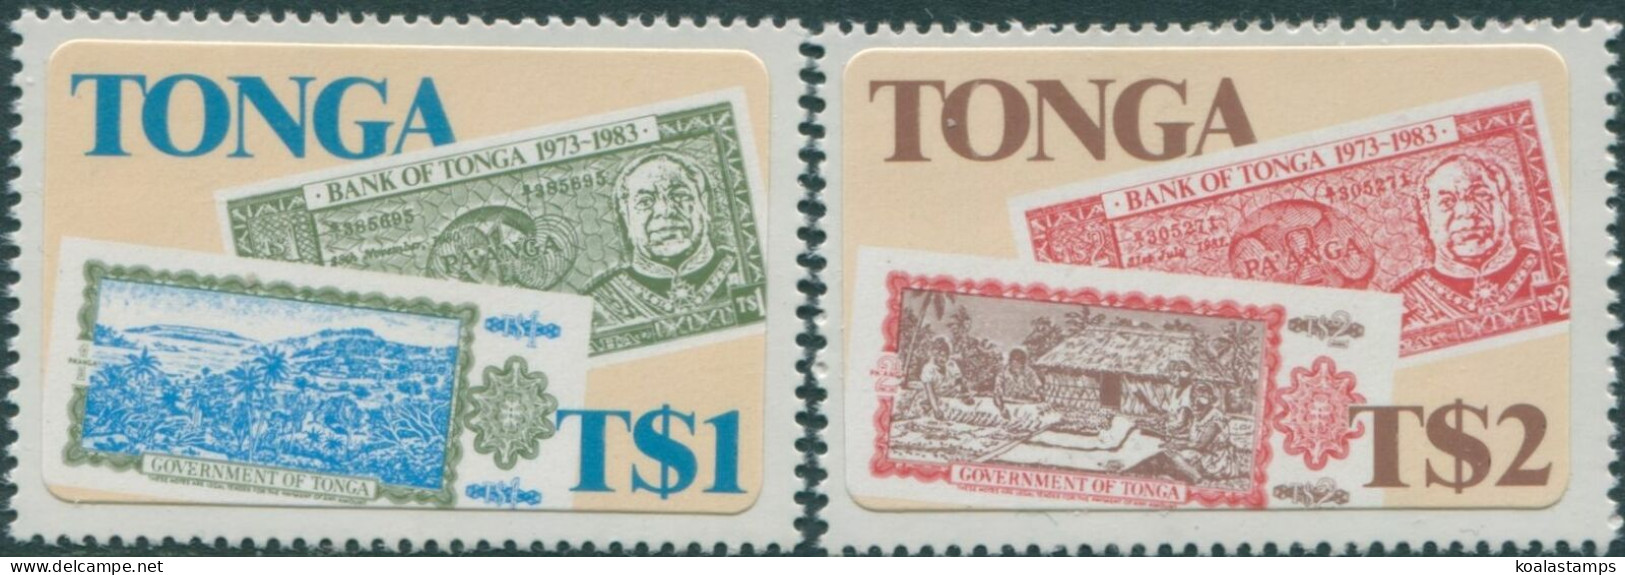 Tonga 1983 SG851-852 Bank Set MNH - Tonga (1970-...)